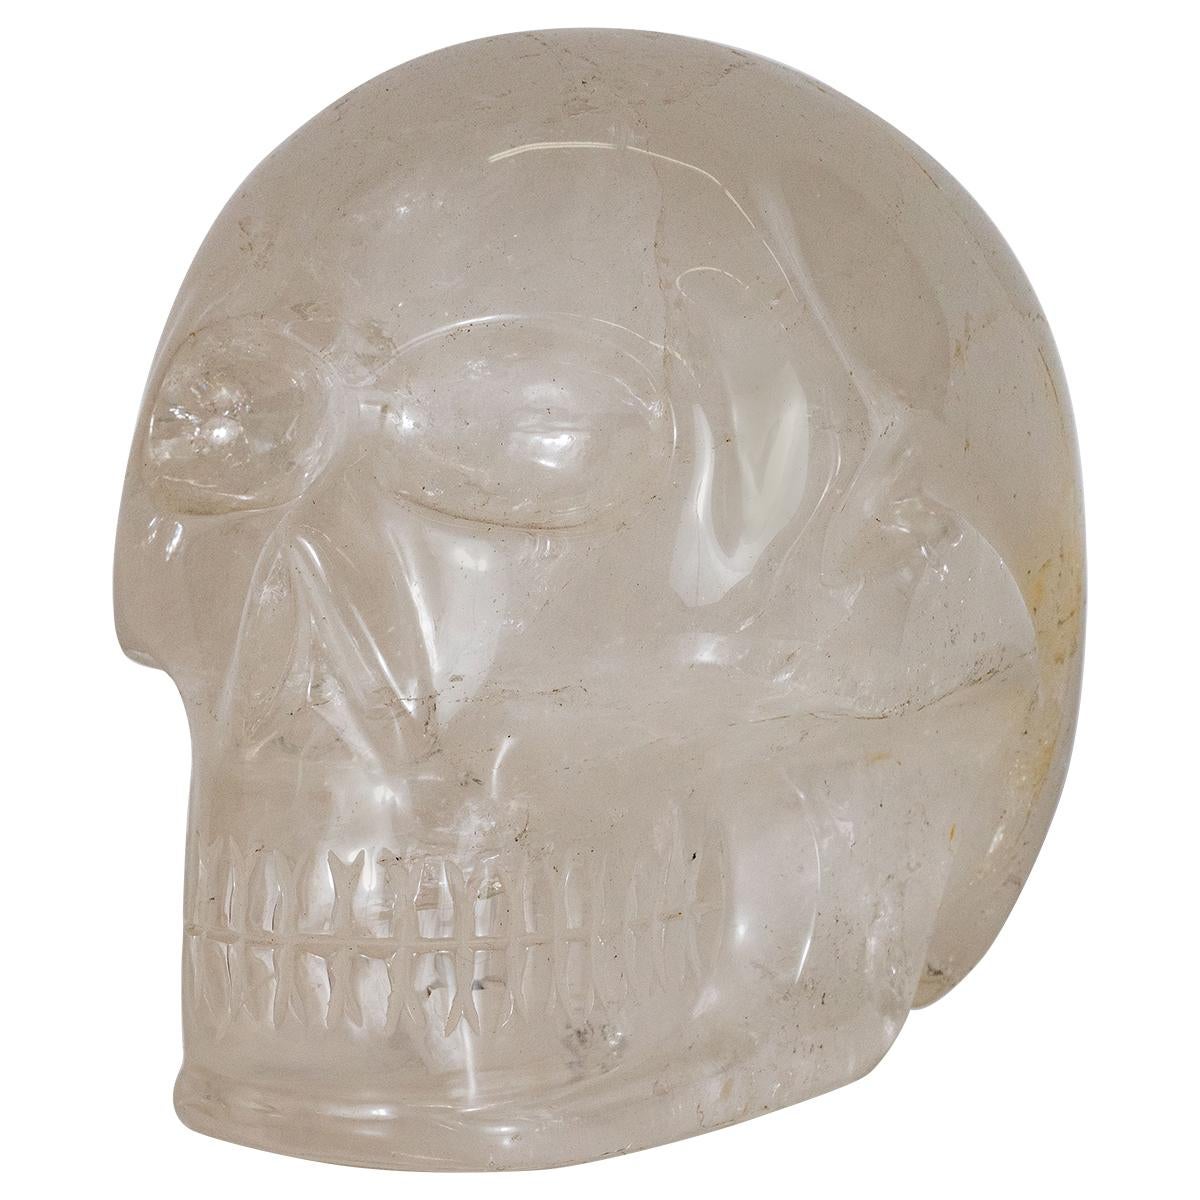 Rock crystal skull sculpture.